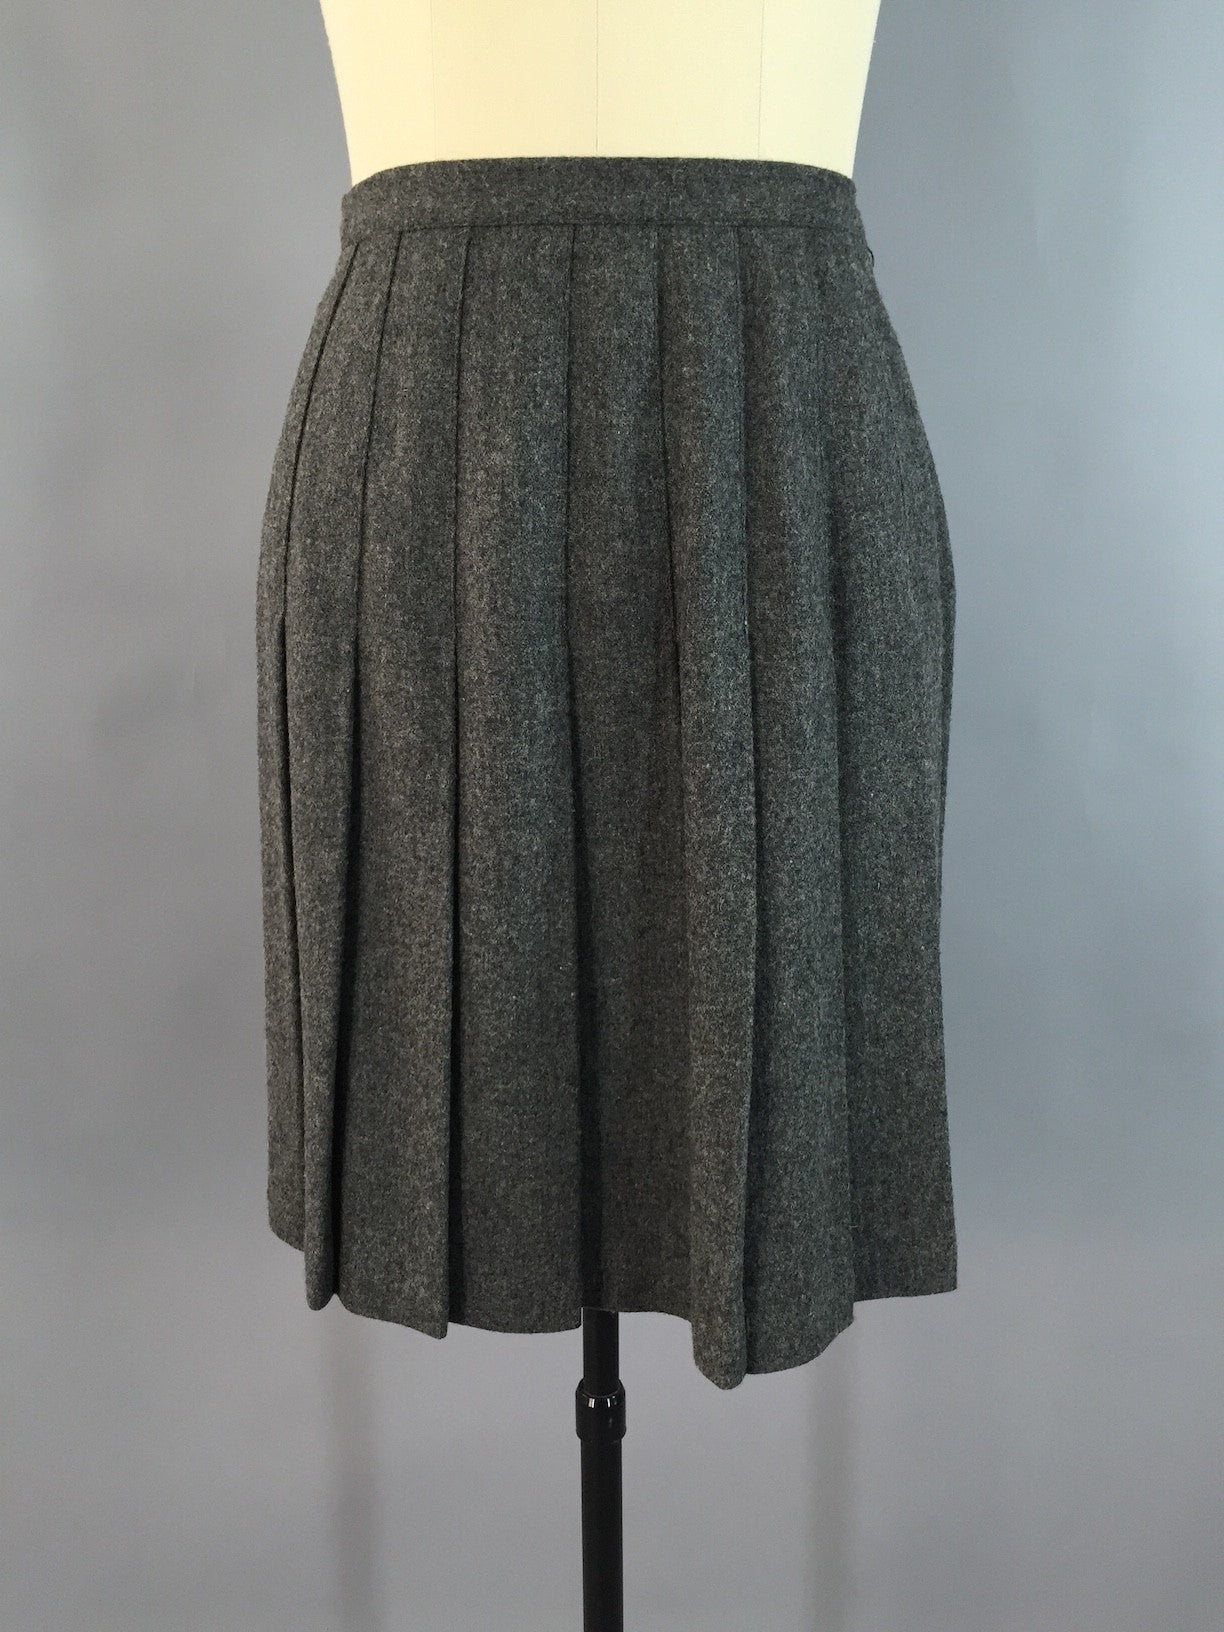 Vintage Pleated Mini Skirt / Grey Wool - ThisBlueBird